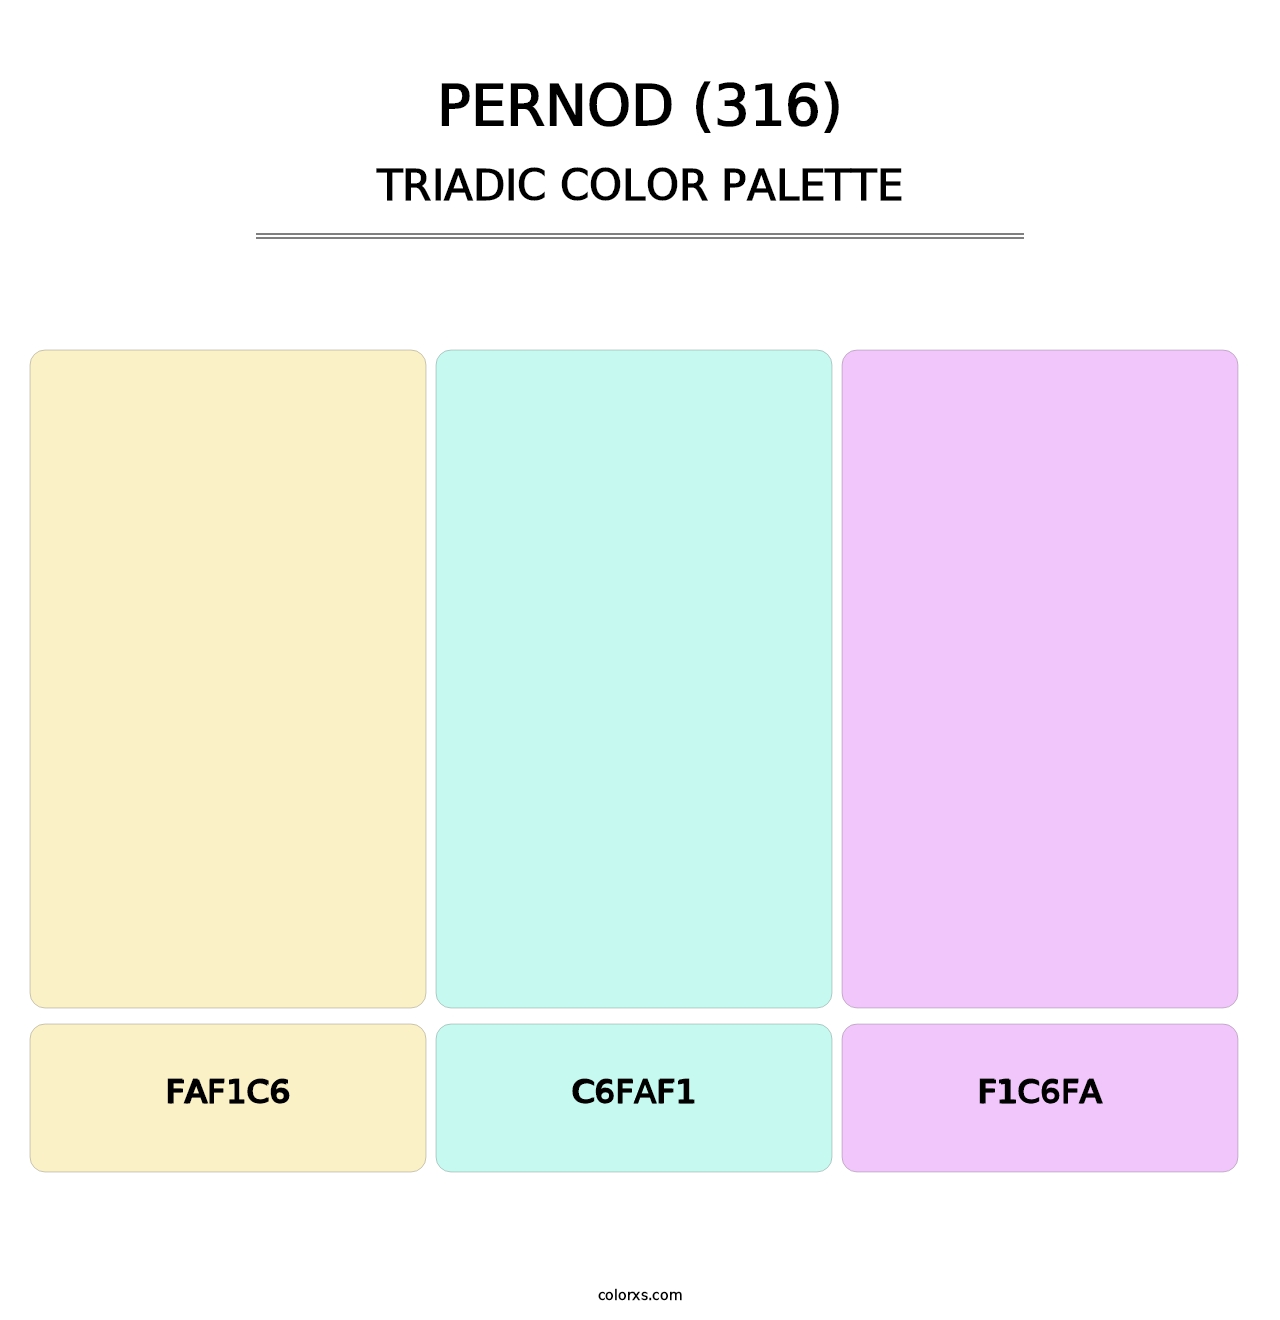 Pernod (316) - Triadic Color Palette